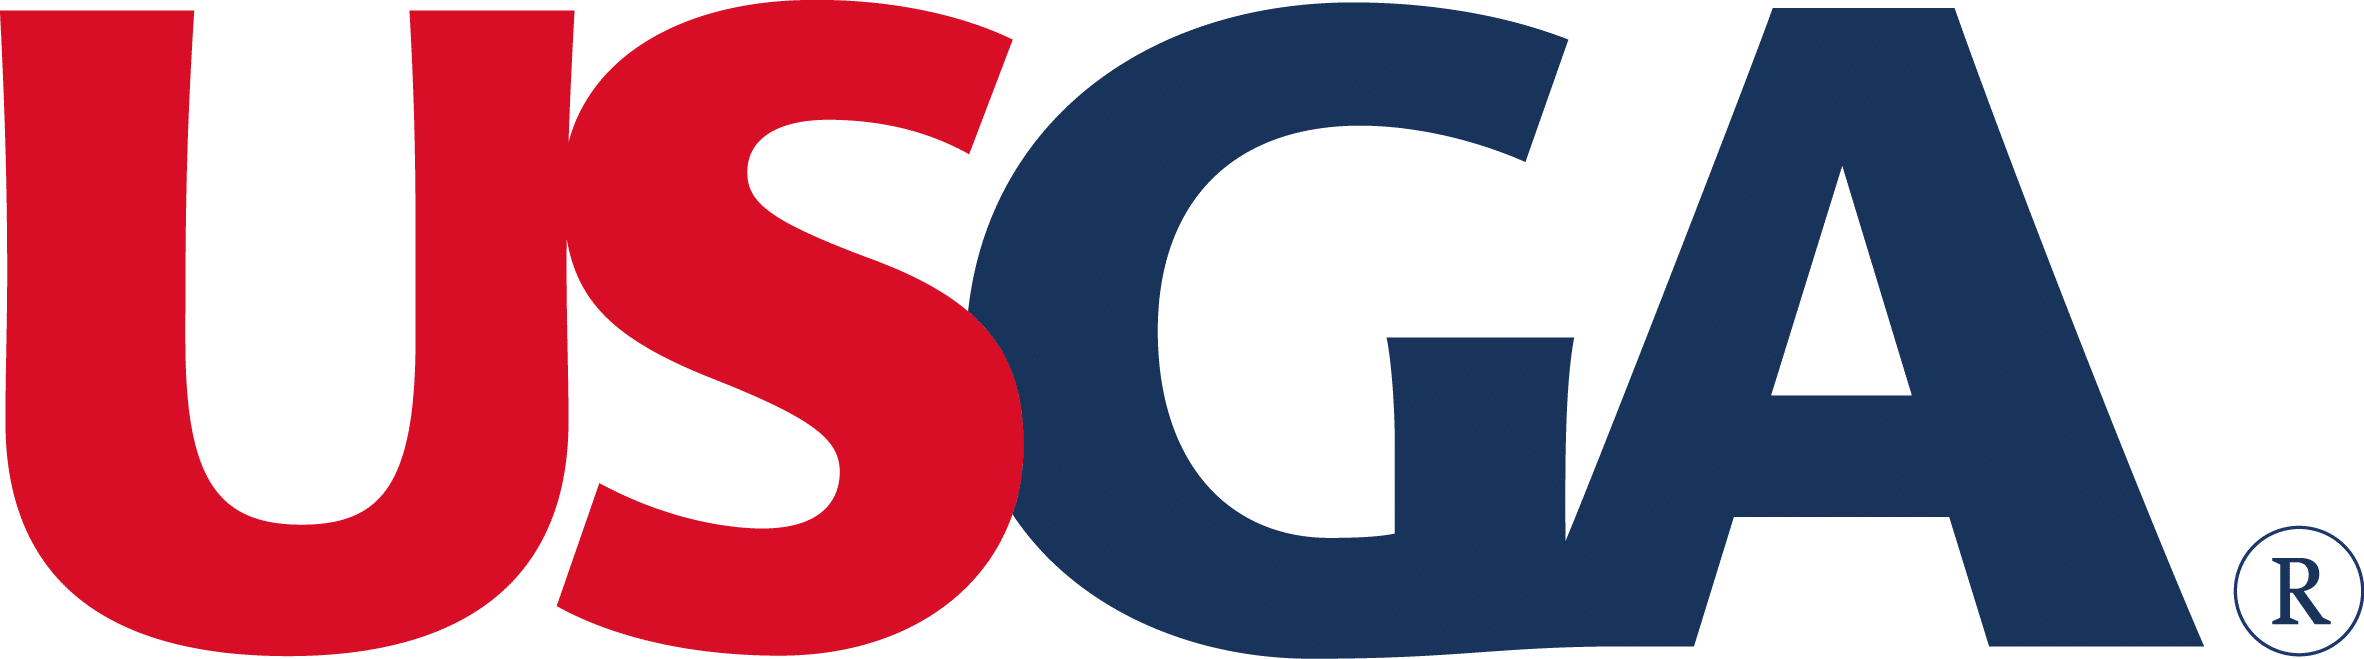 USGA-Logo-1.png